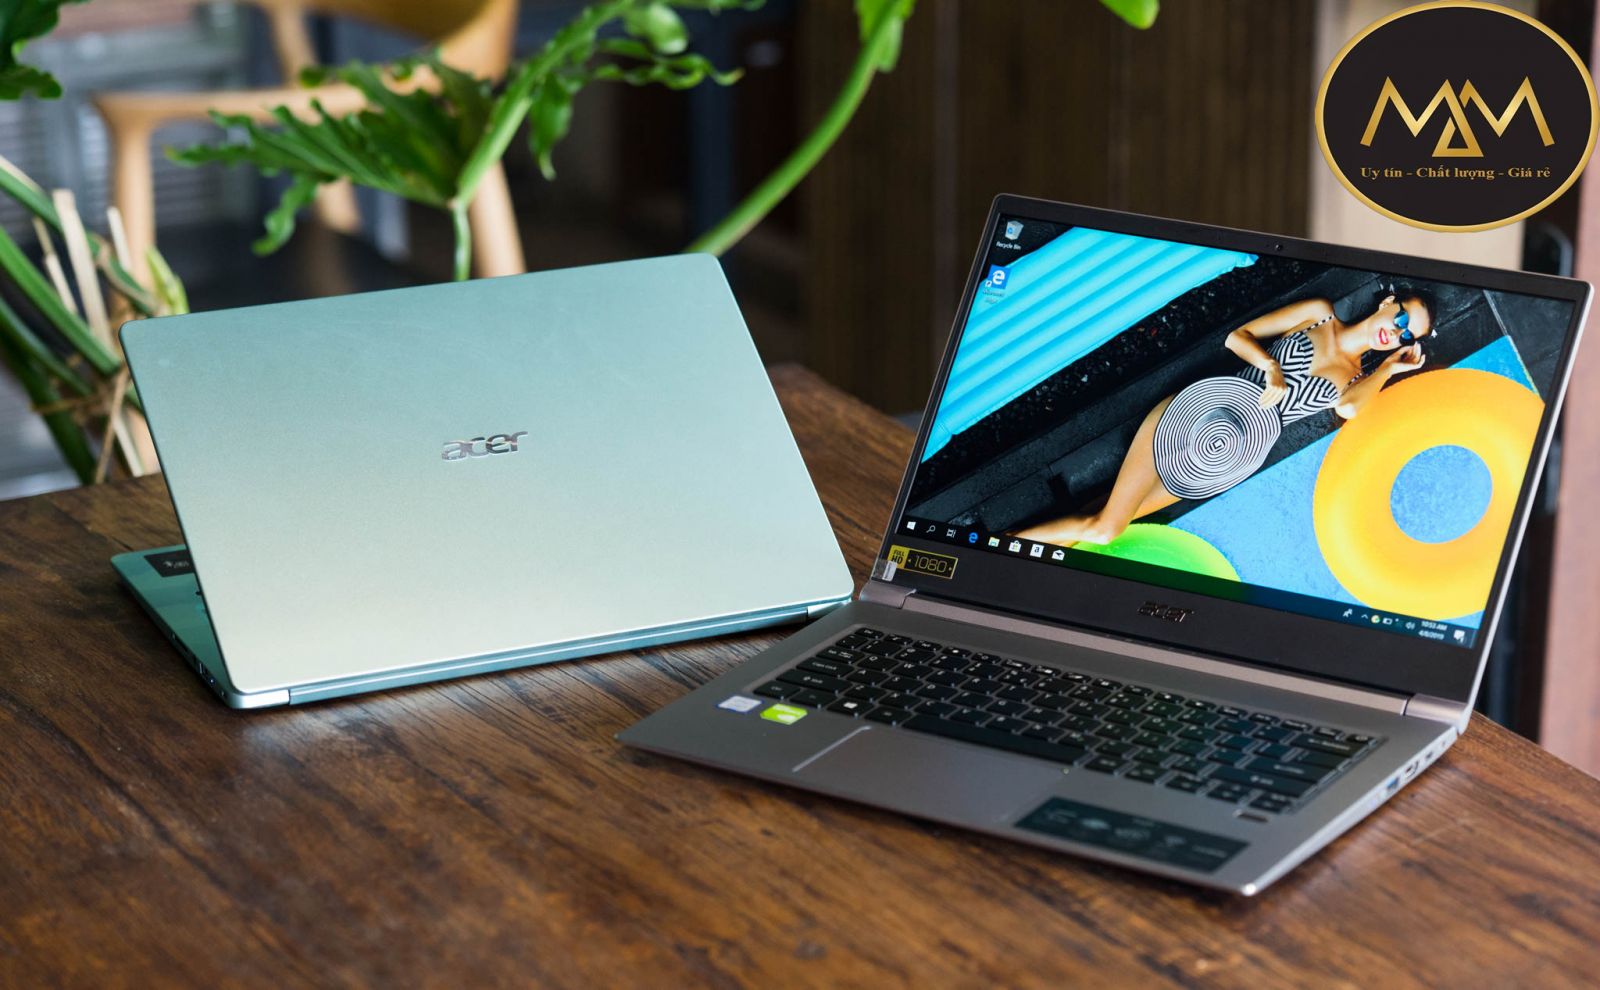 Laptop Acer cũ giá rẻ TPHCM